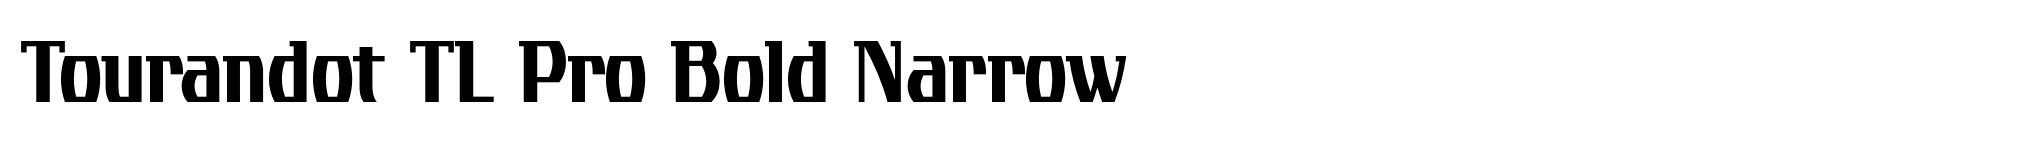 Tourandot TL Pro Bold Narrow image